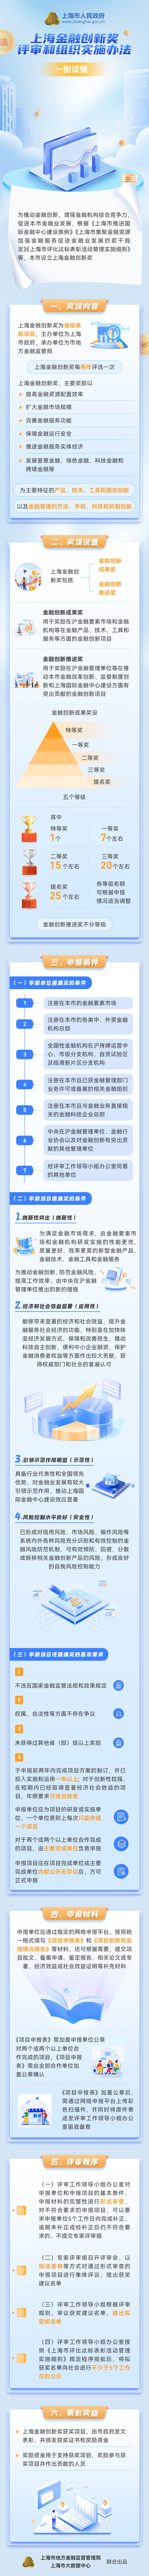 上海金融创新奖评审和组织实施办法.jpg